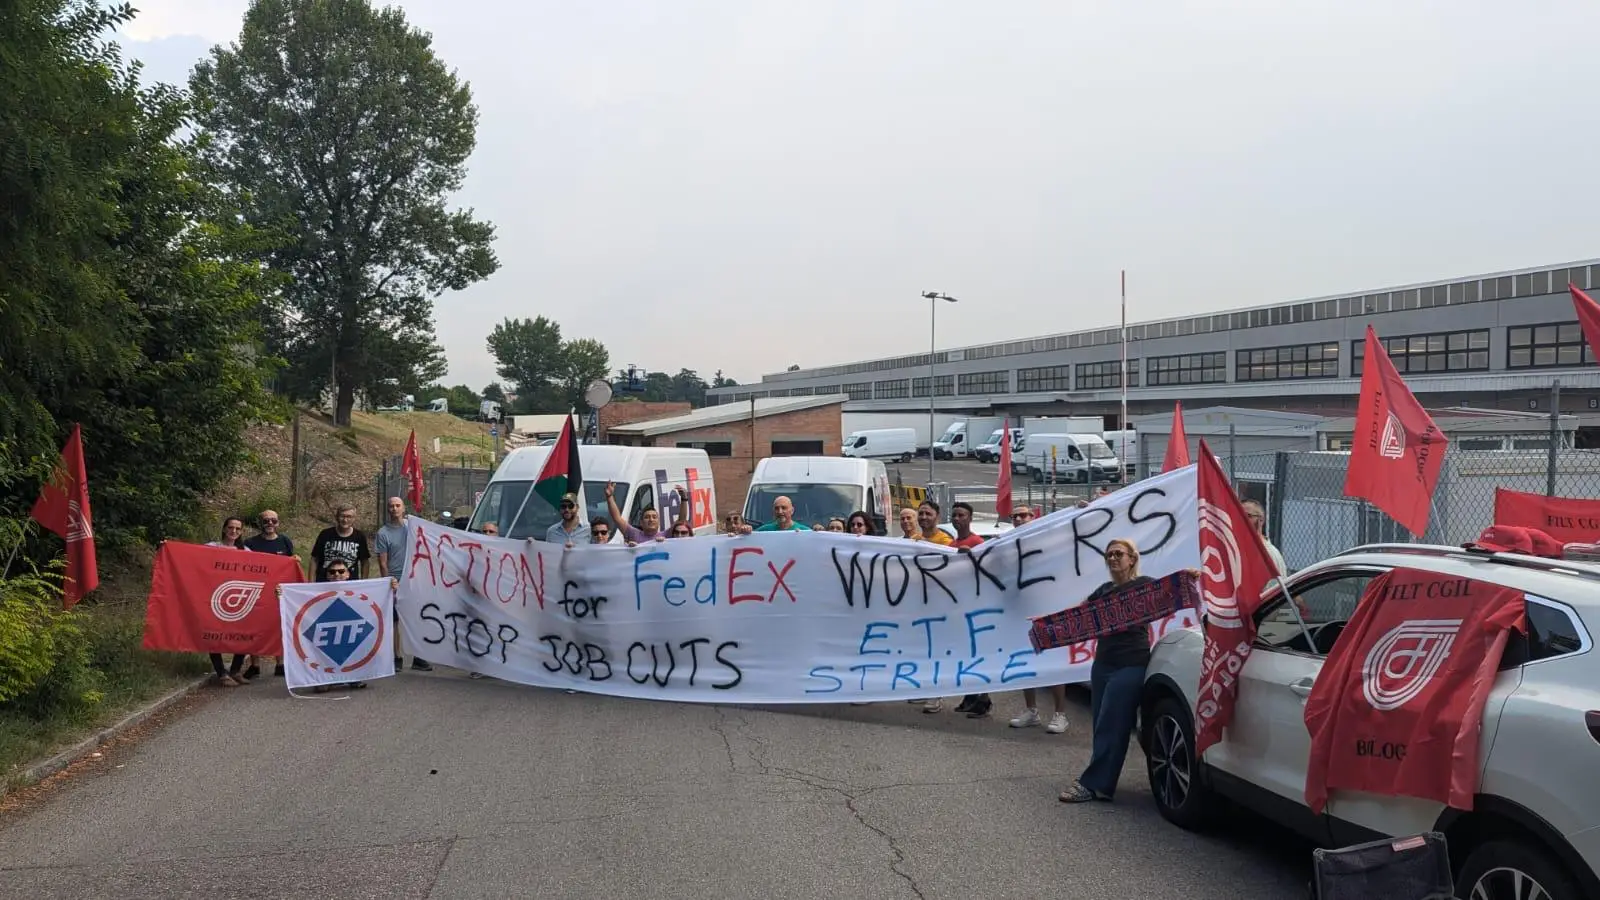 Pienamente riuscito sciopero unitario in Fedex contro i tagli al personale